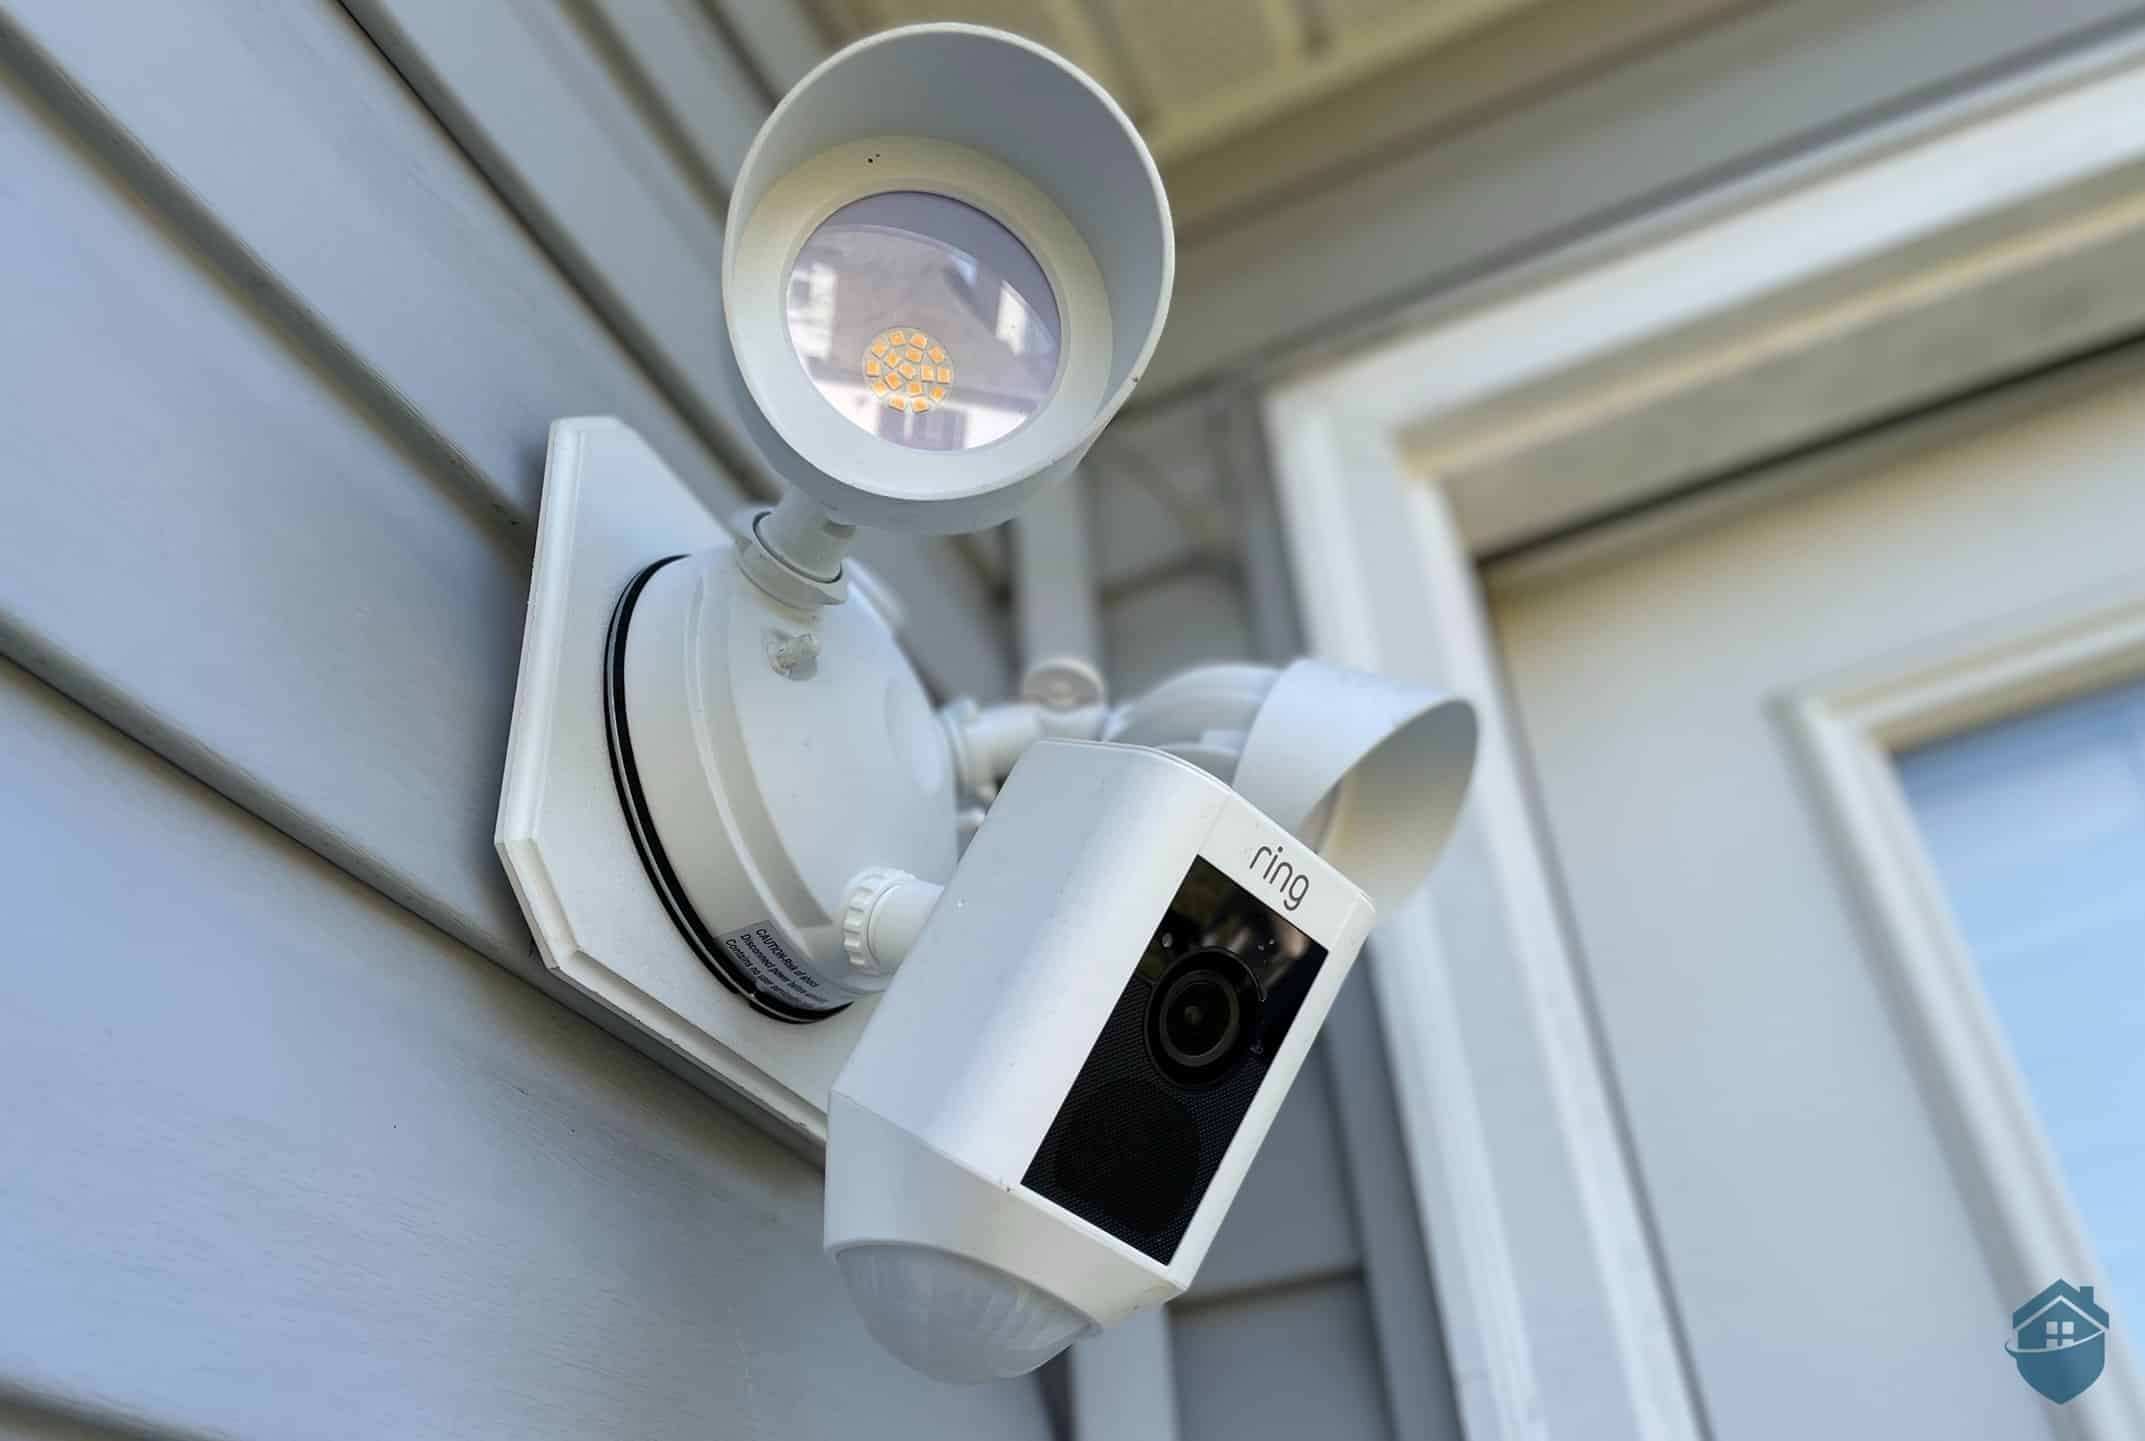  Ring Alarm Outdoor Contact Sensor : Tools & Home